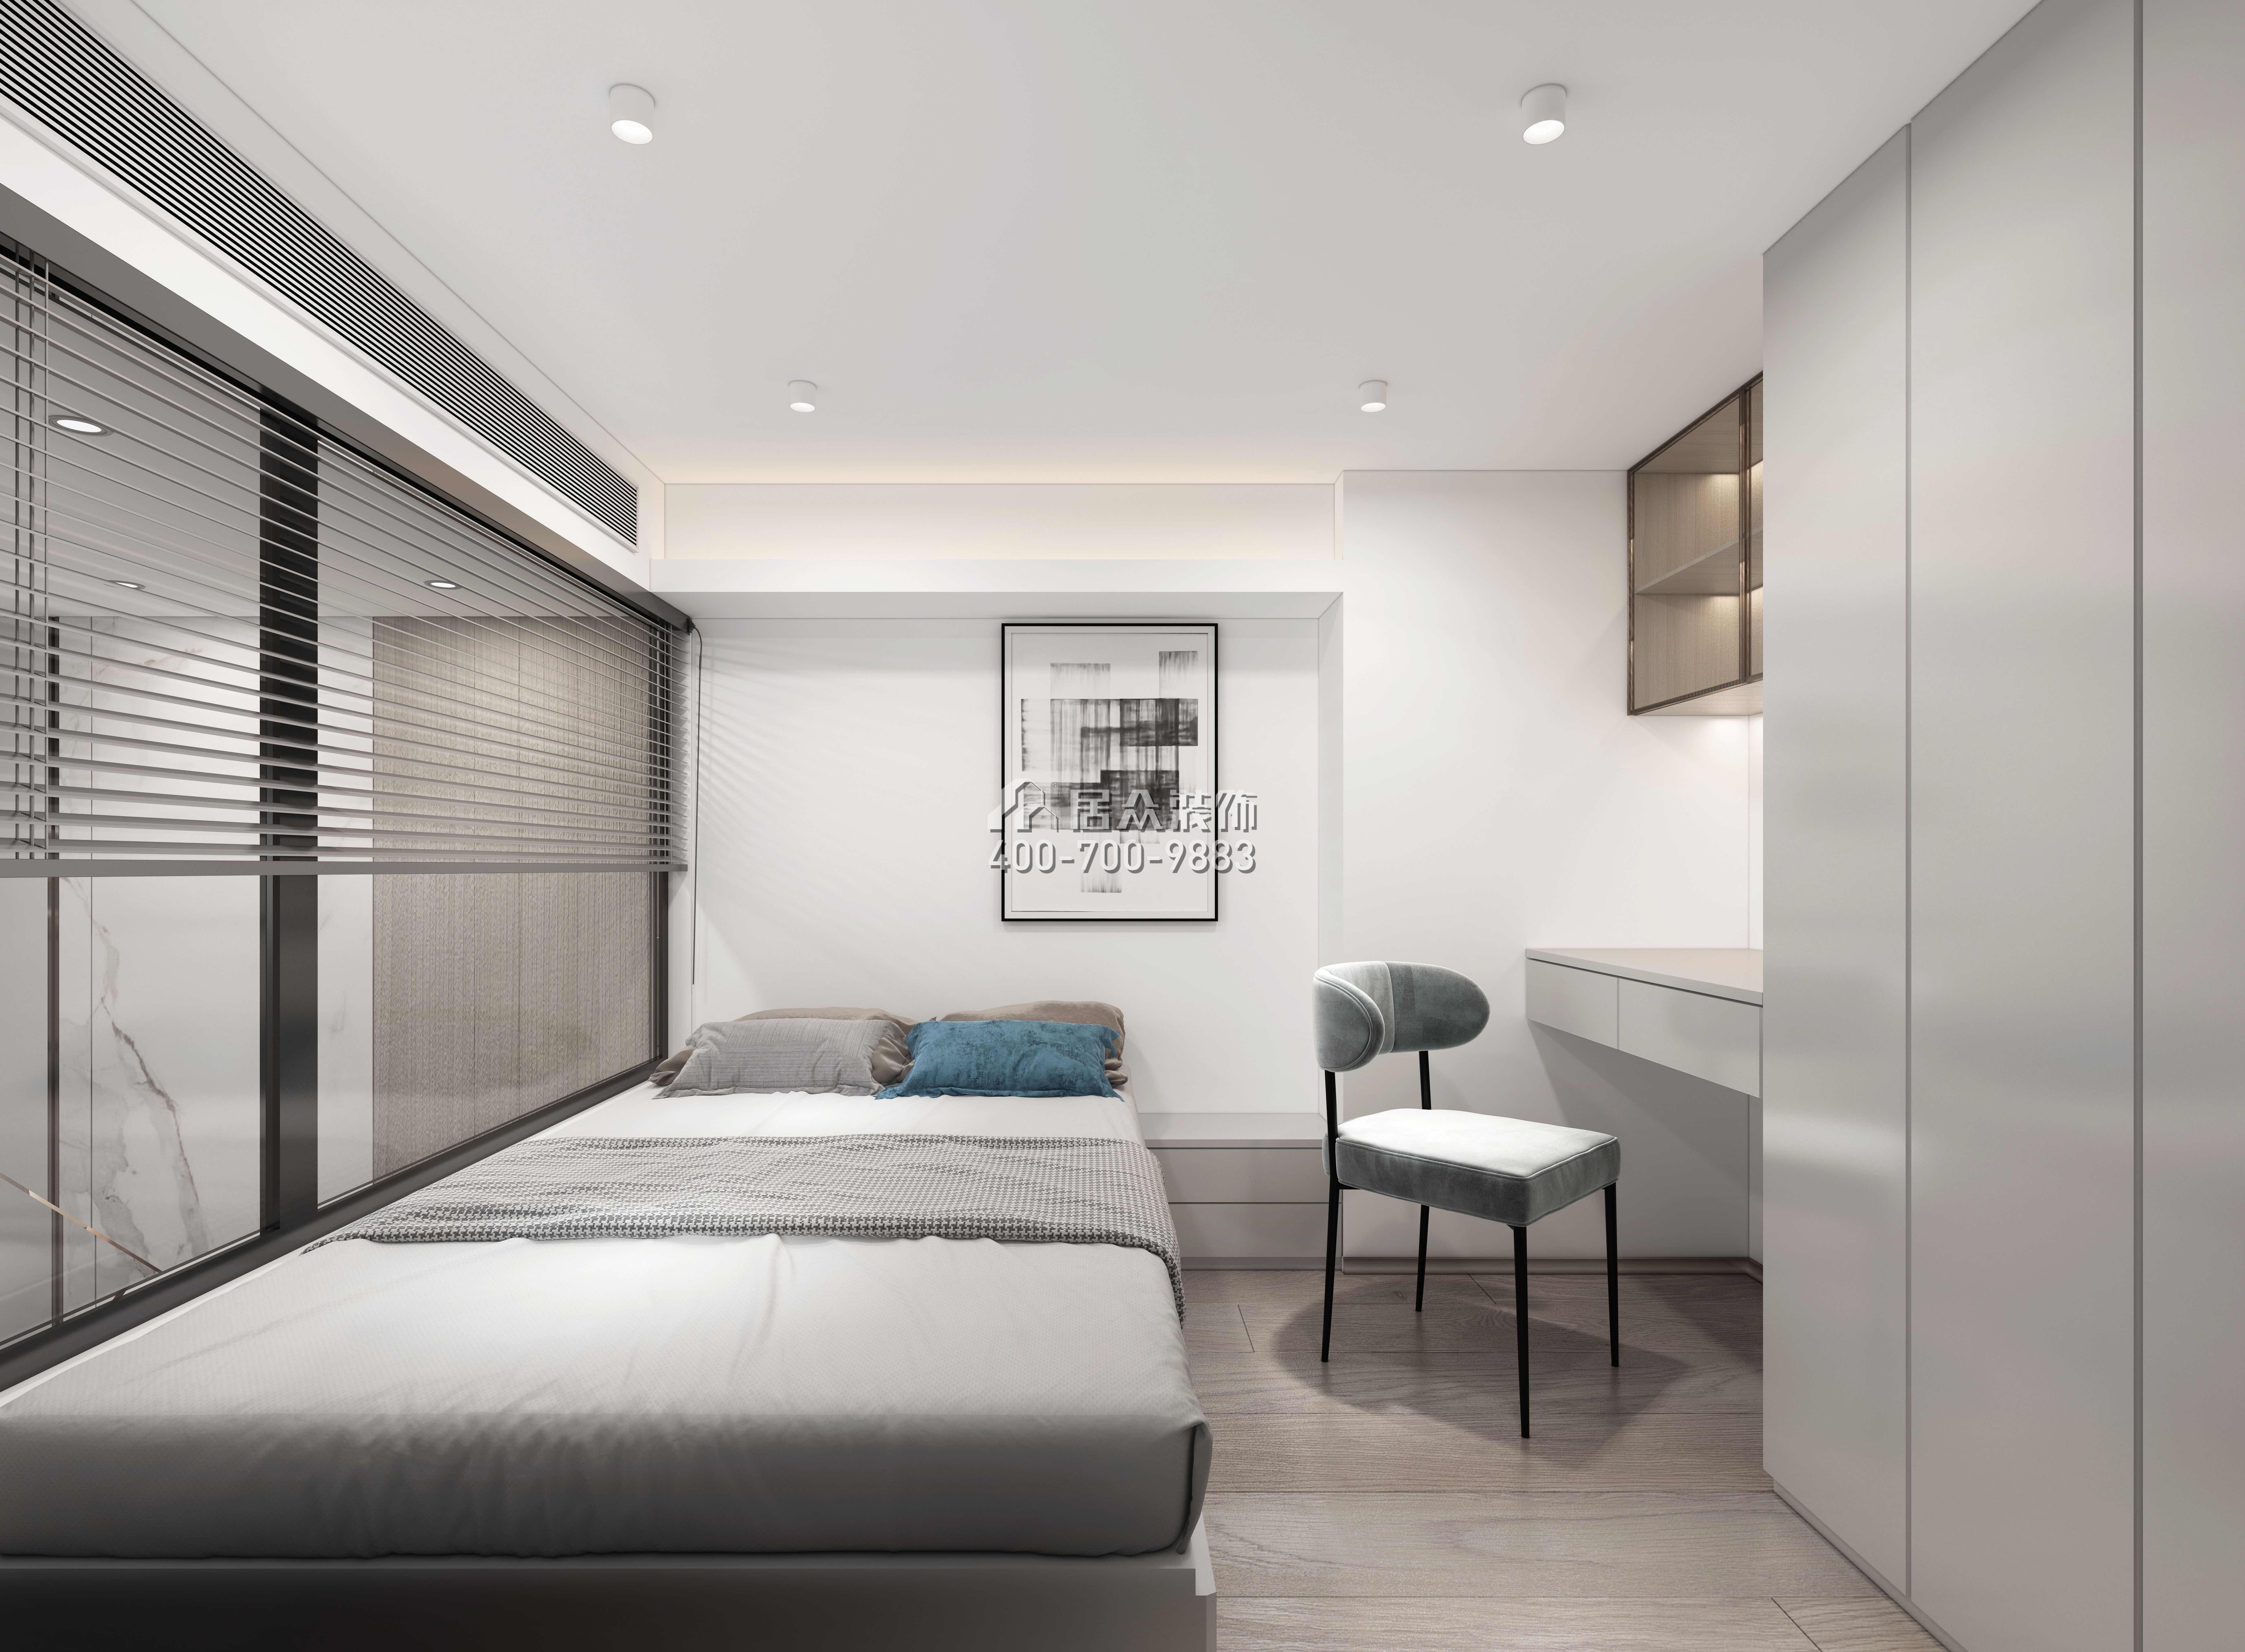 萬科臻灣匯110平方米現代簡約風格復式戶型臥室裝修效果圖